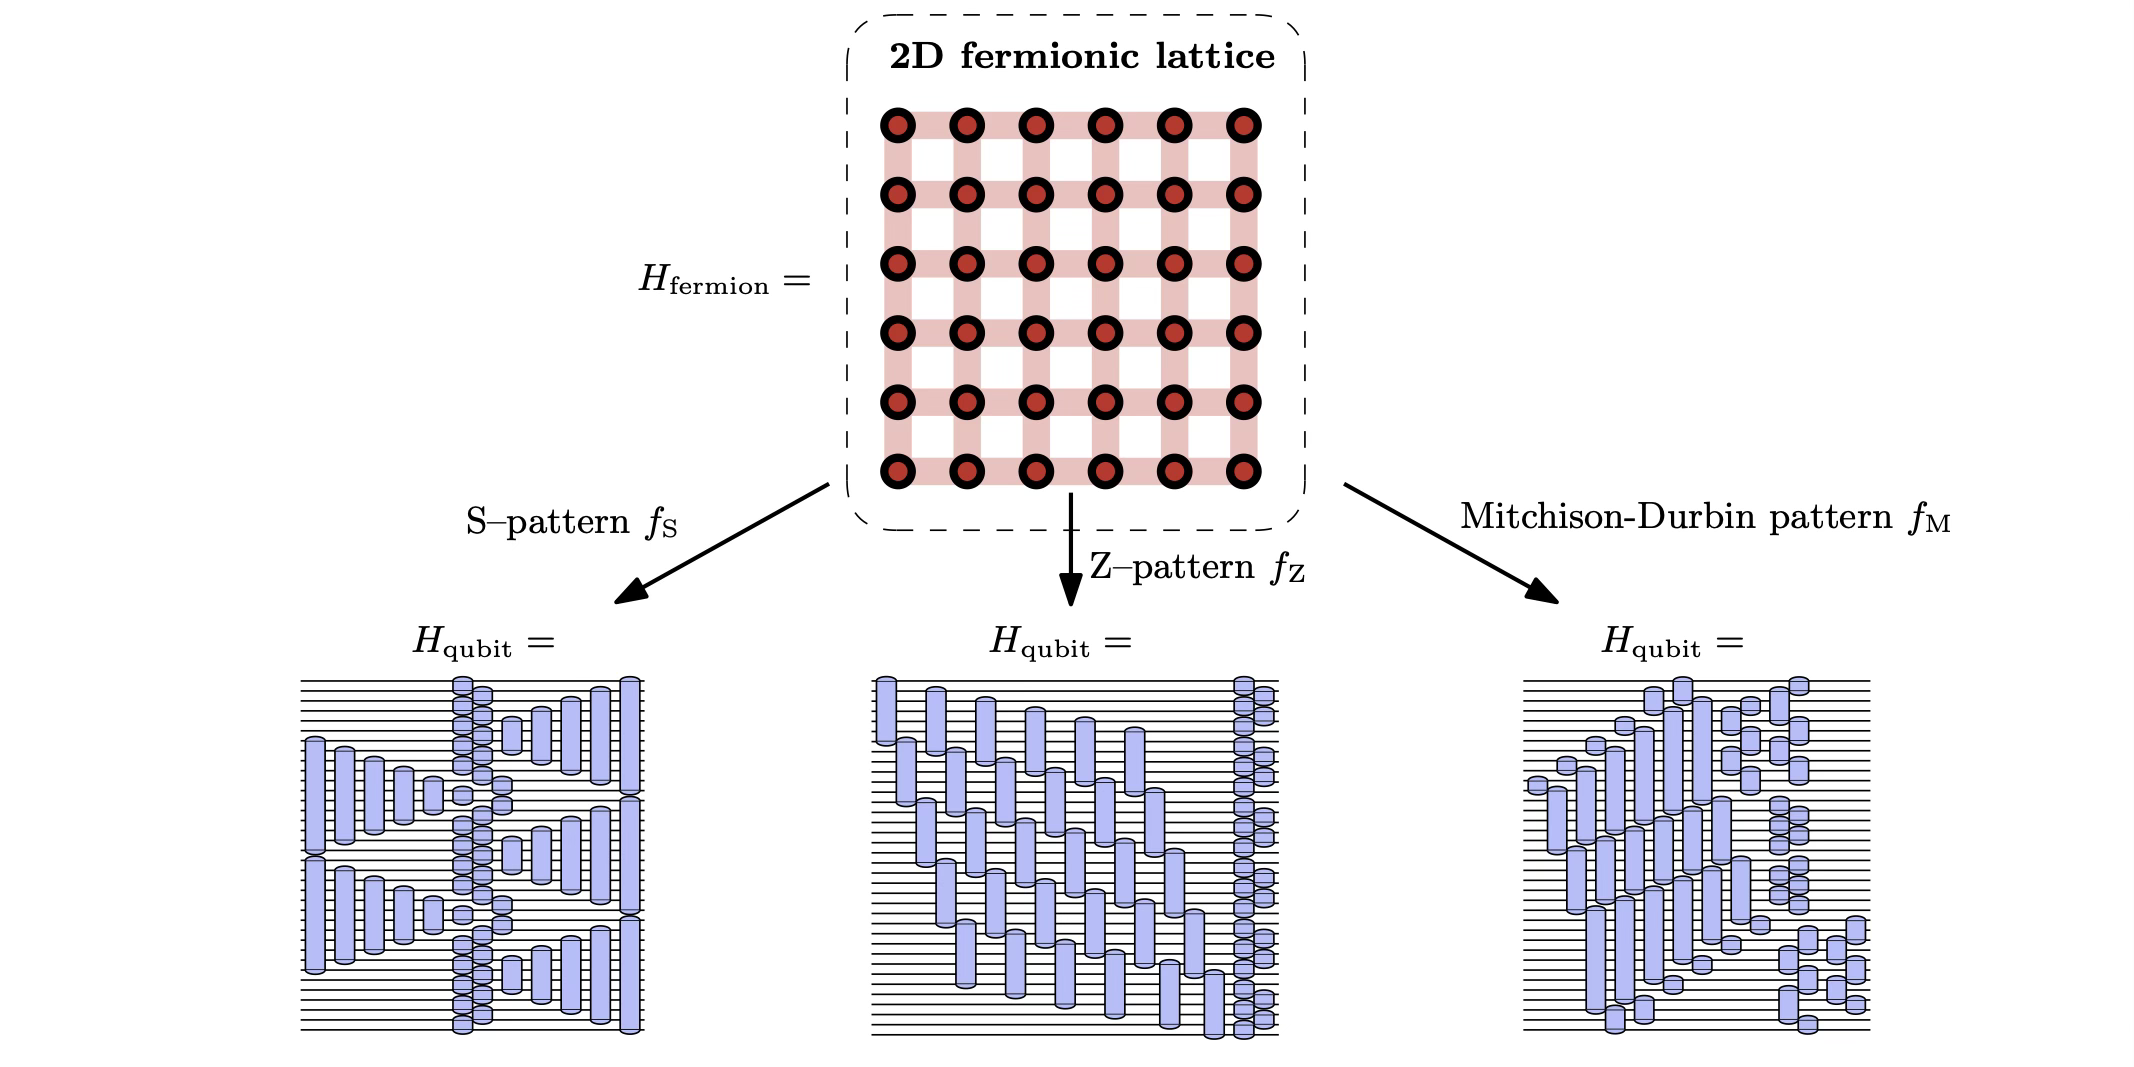 Opdagelse af optimale fermion-qubit-kortlægninger gennem algoritmisk opregning